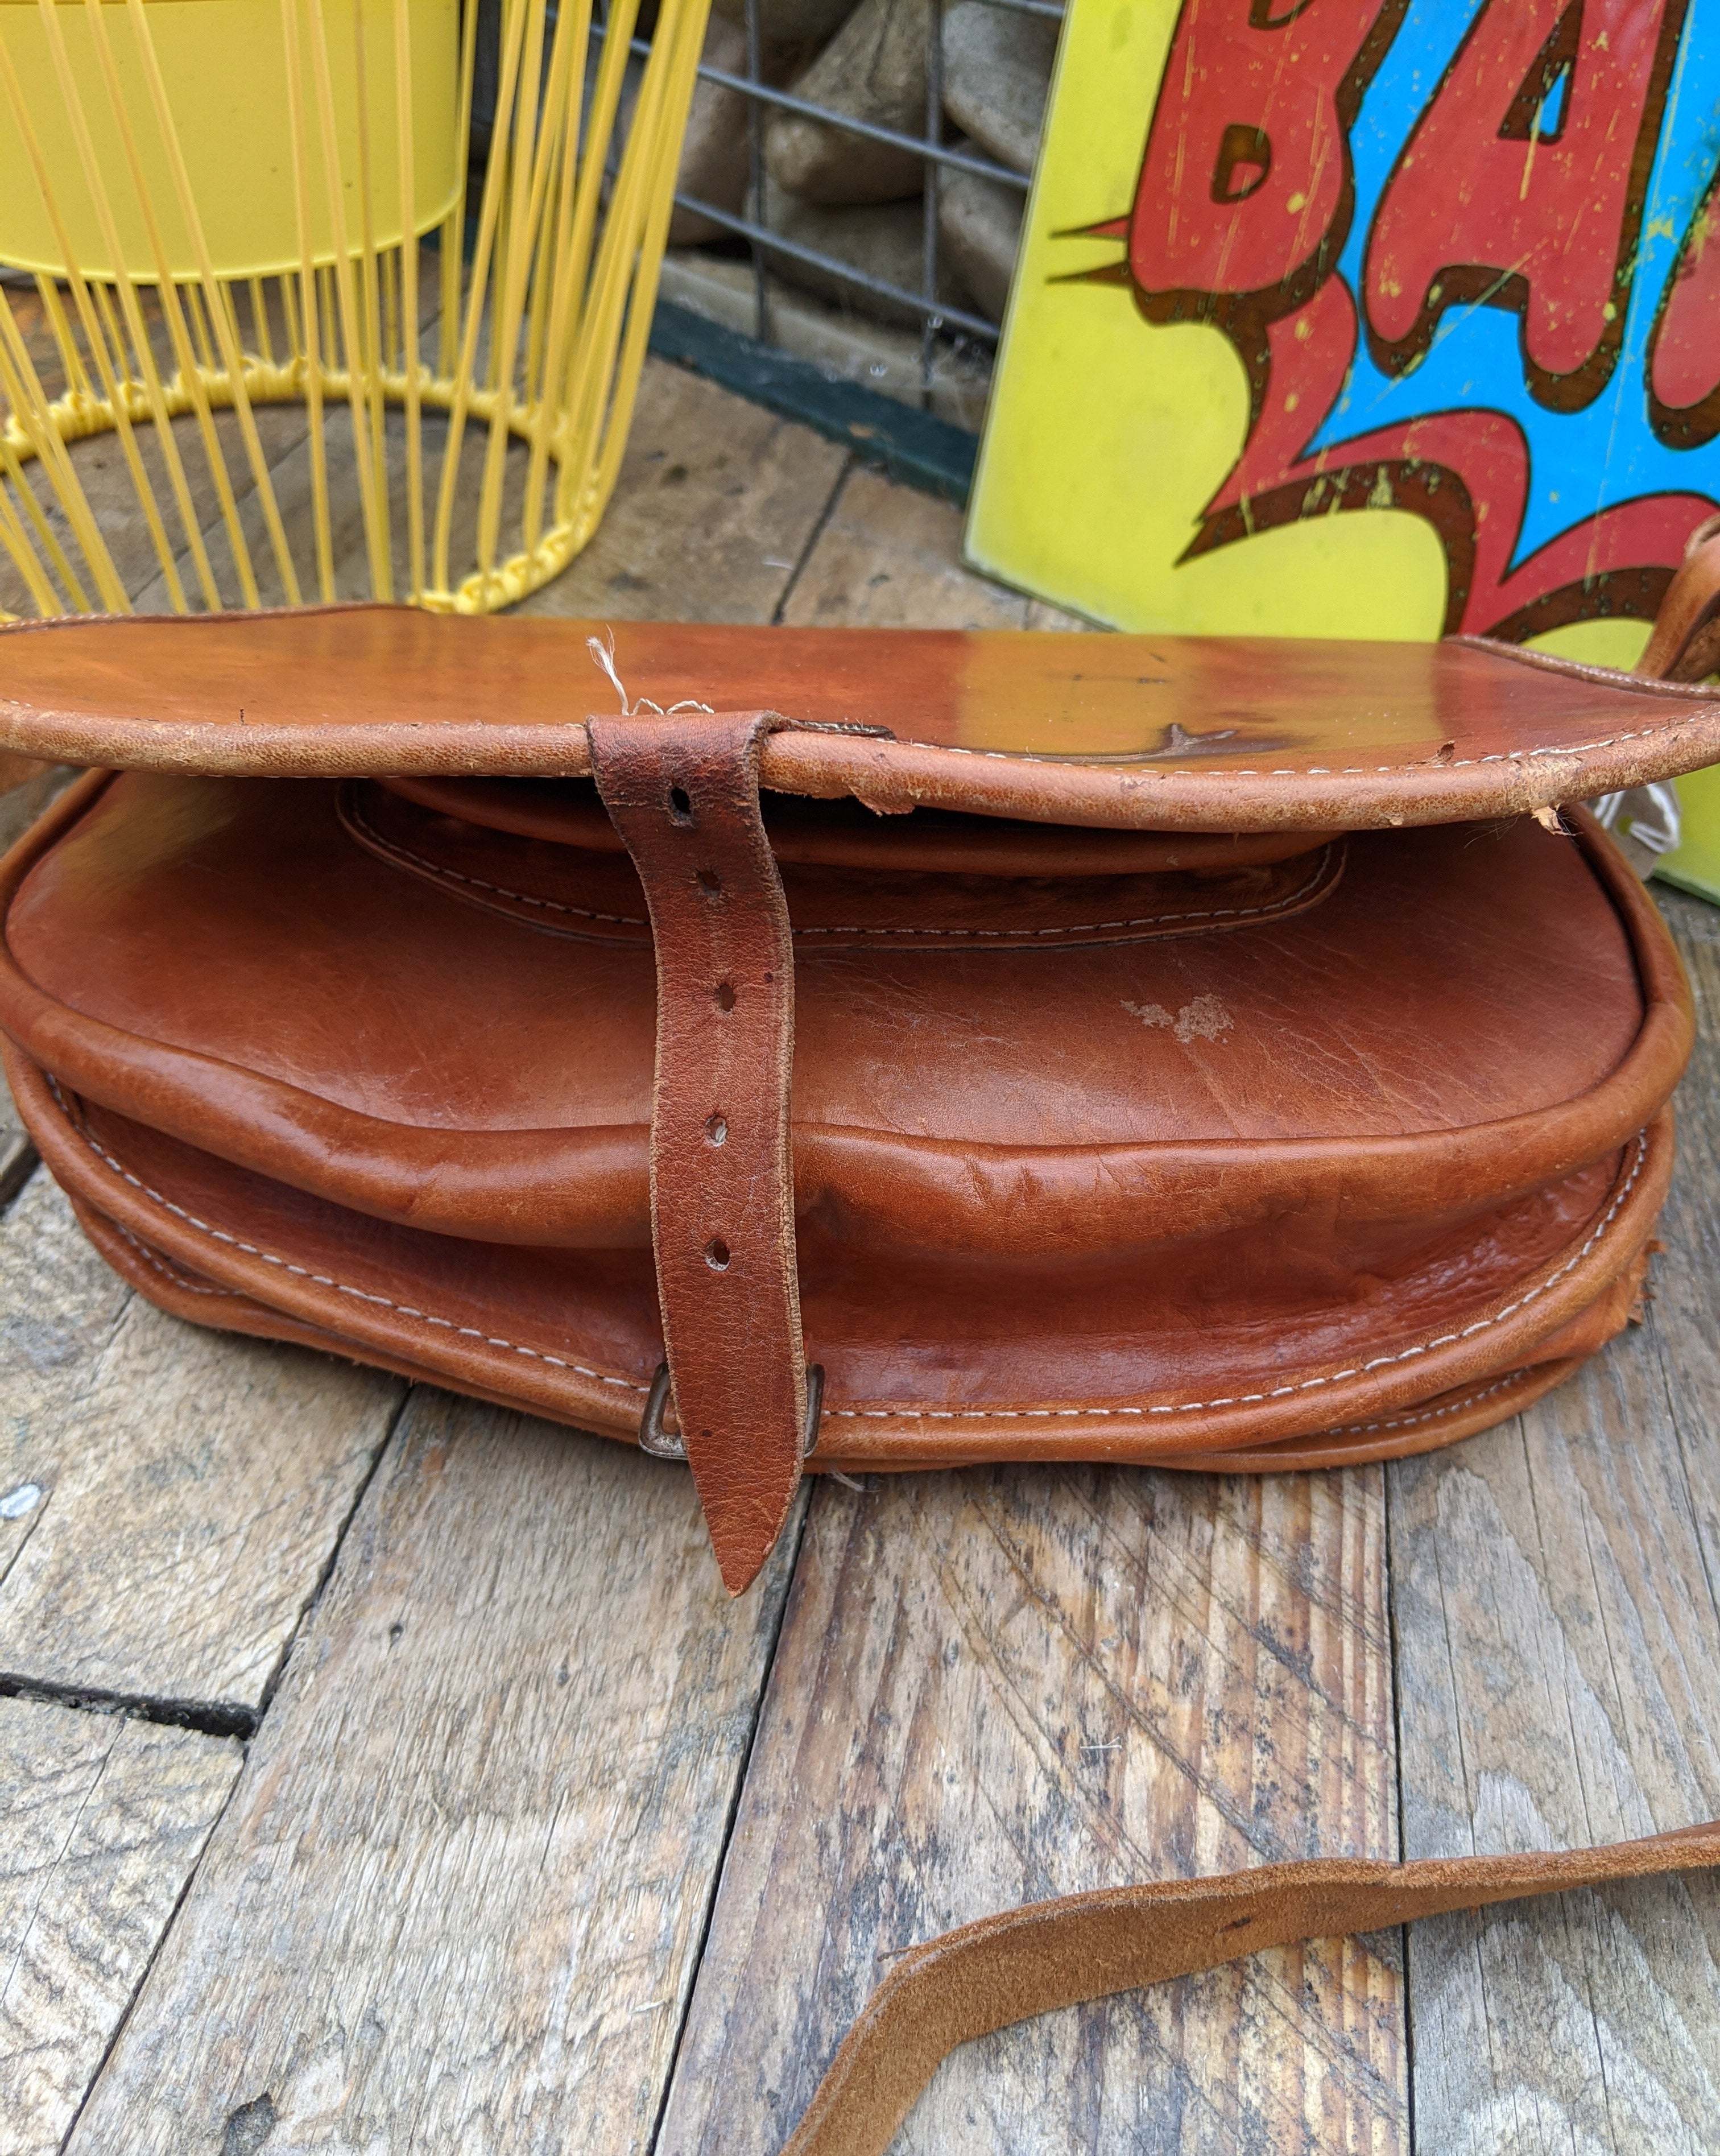 Brown leather 70s saddle bag